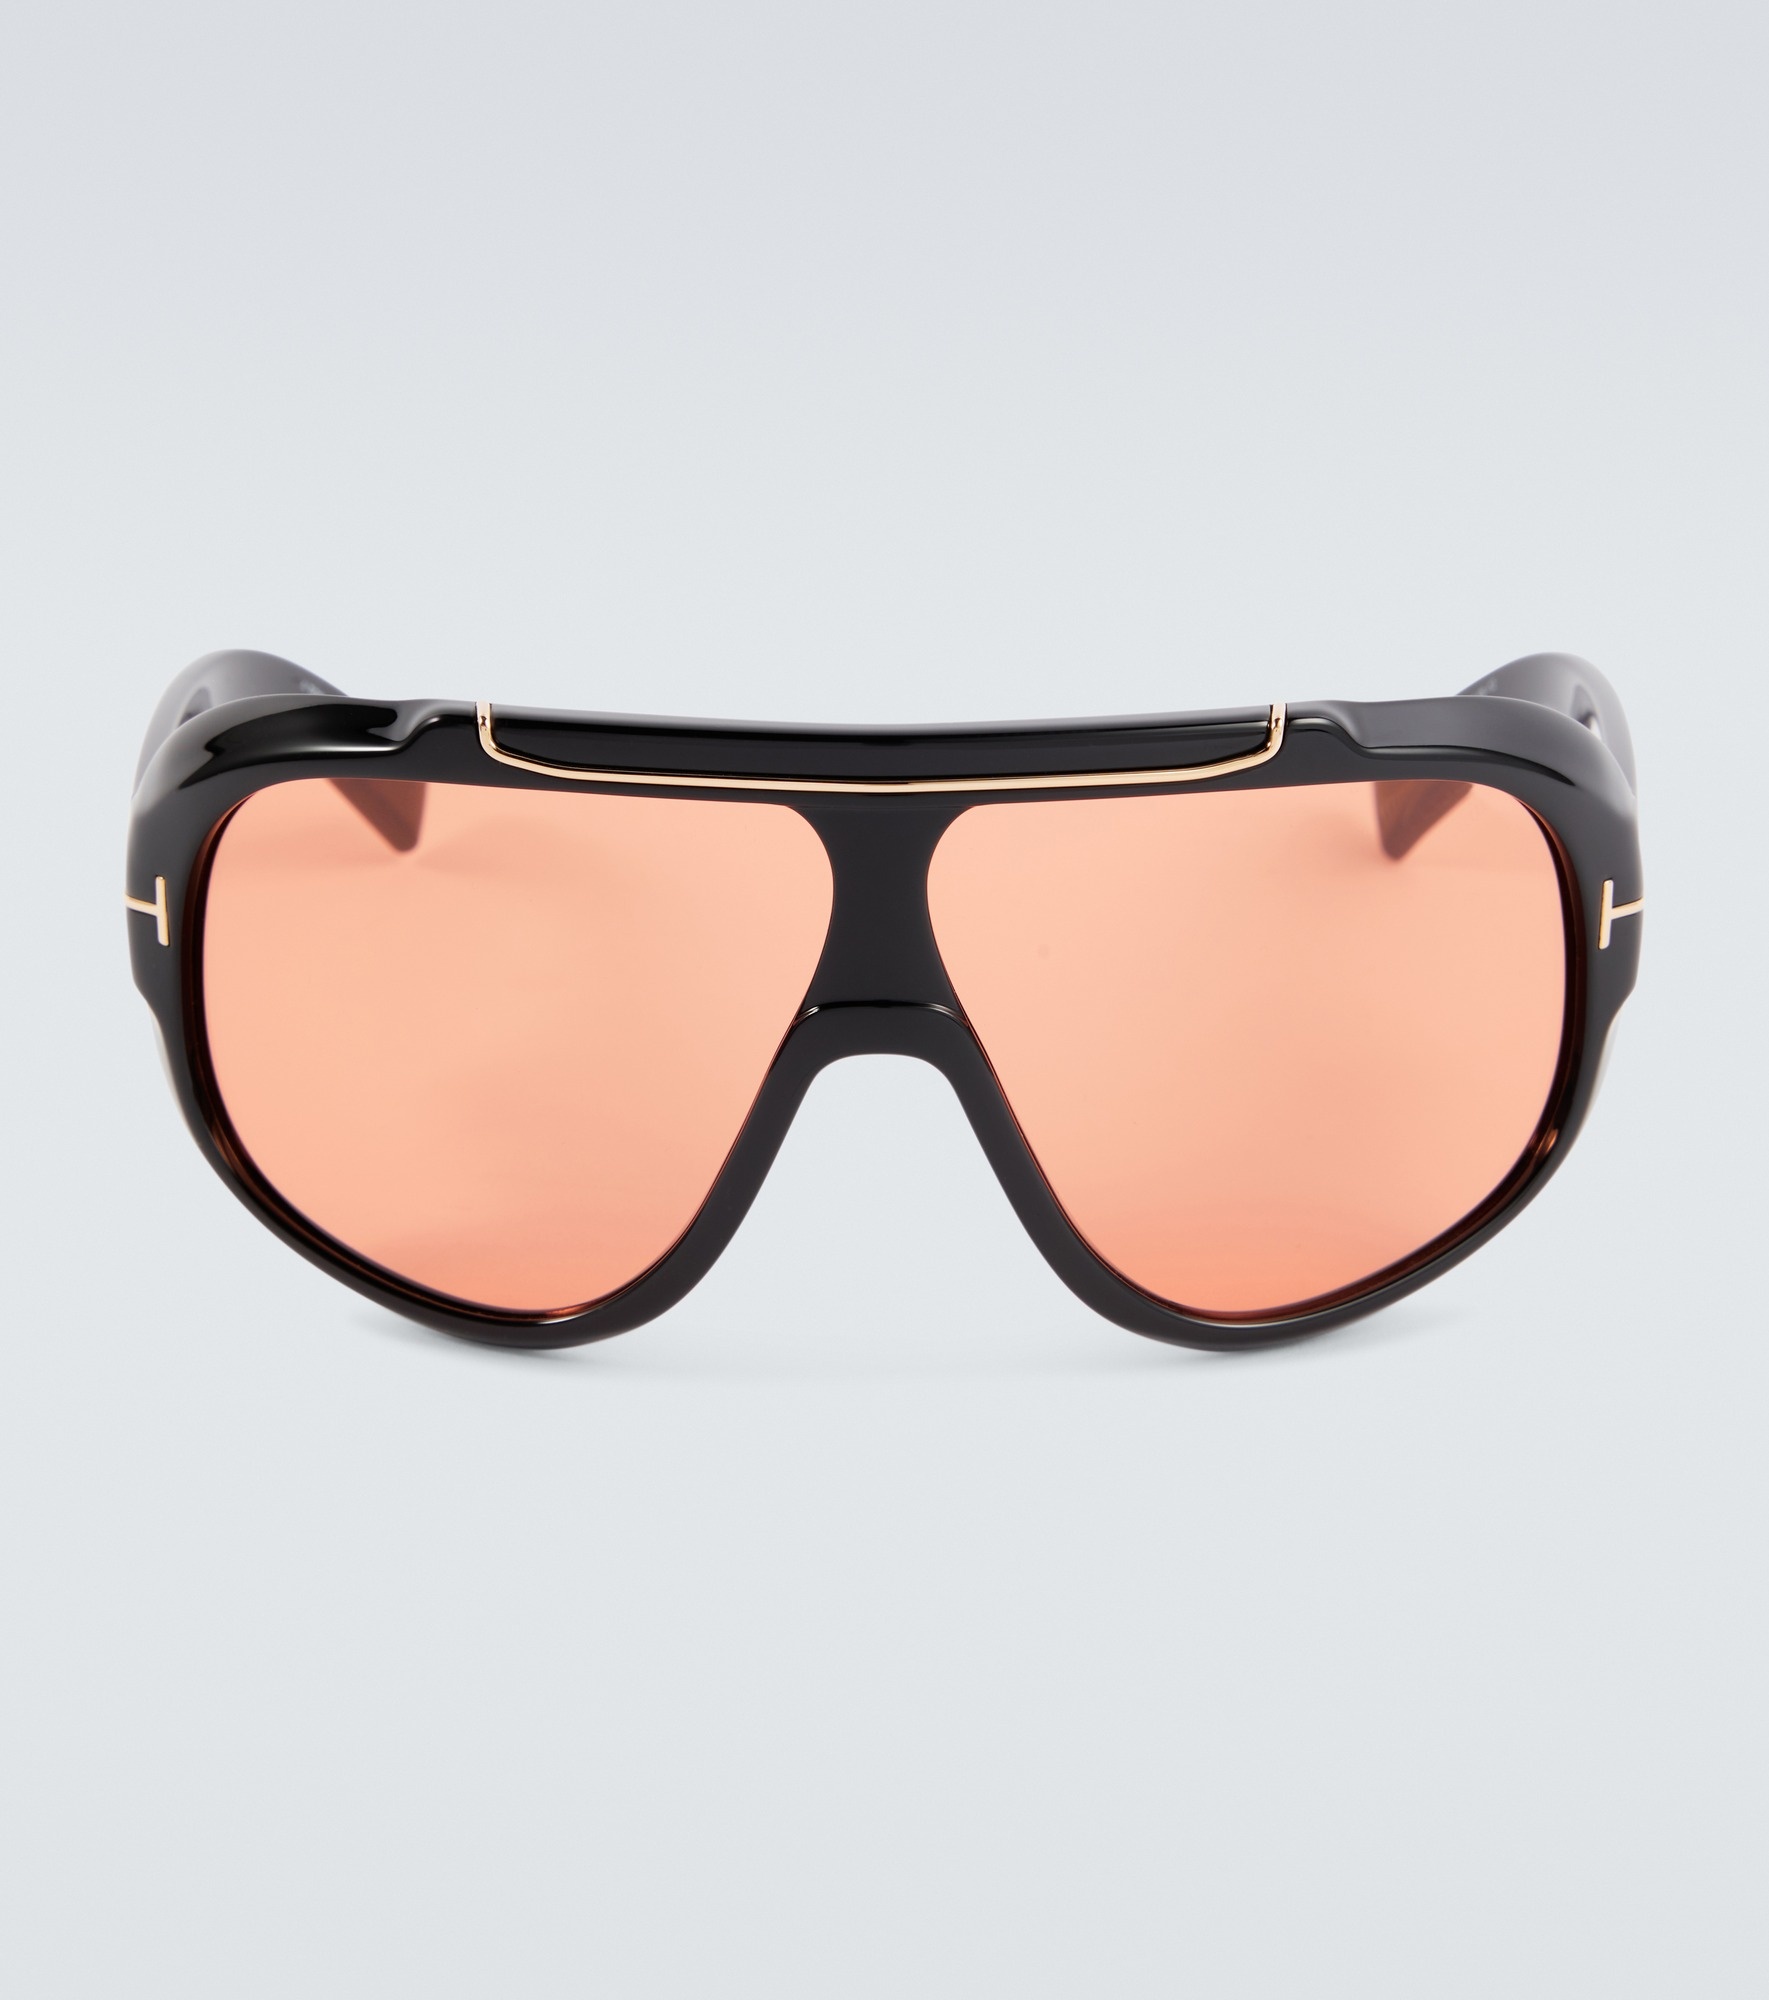 Rellen shield sunglasses - 1